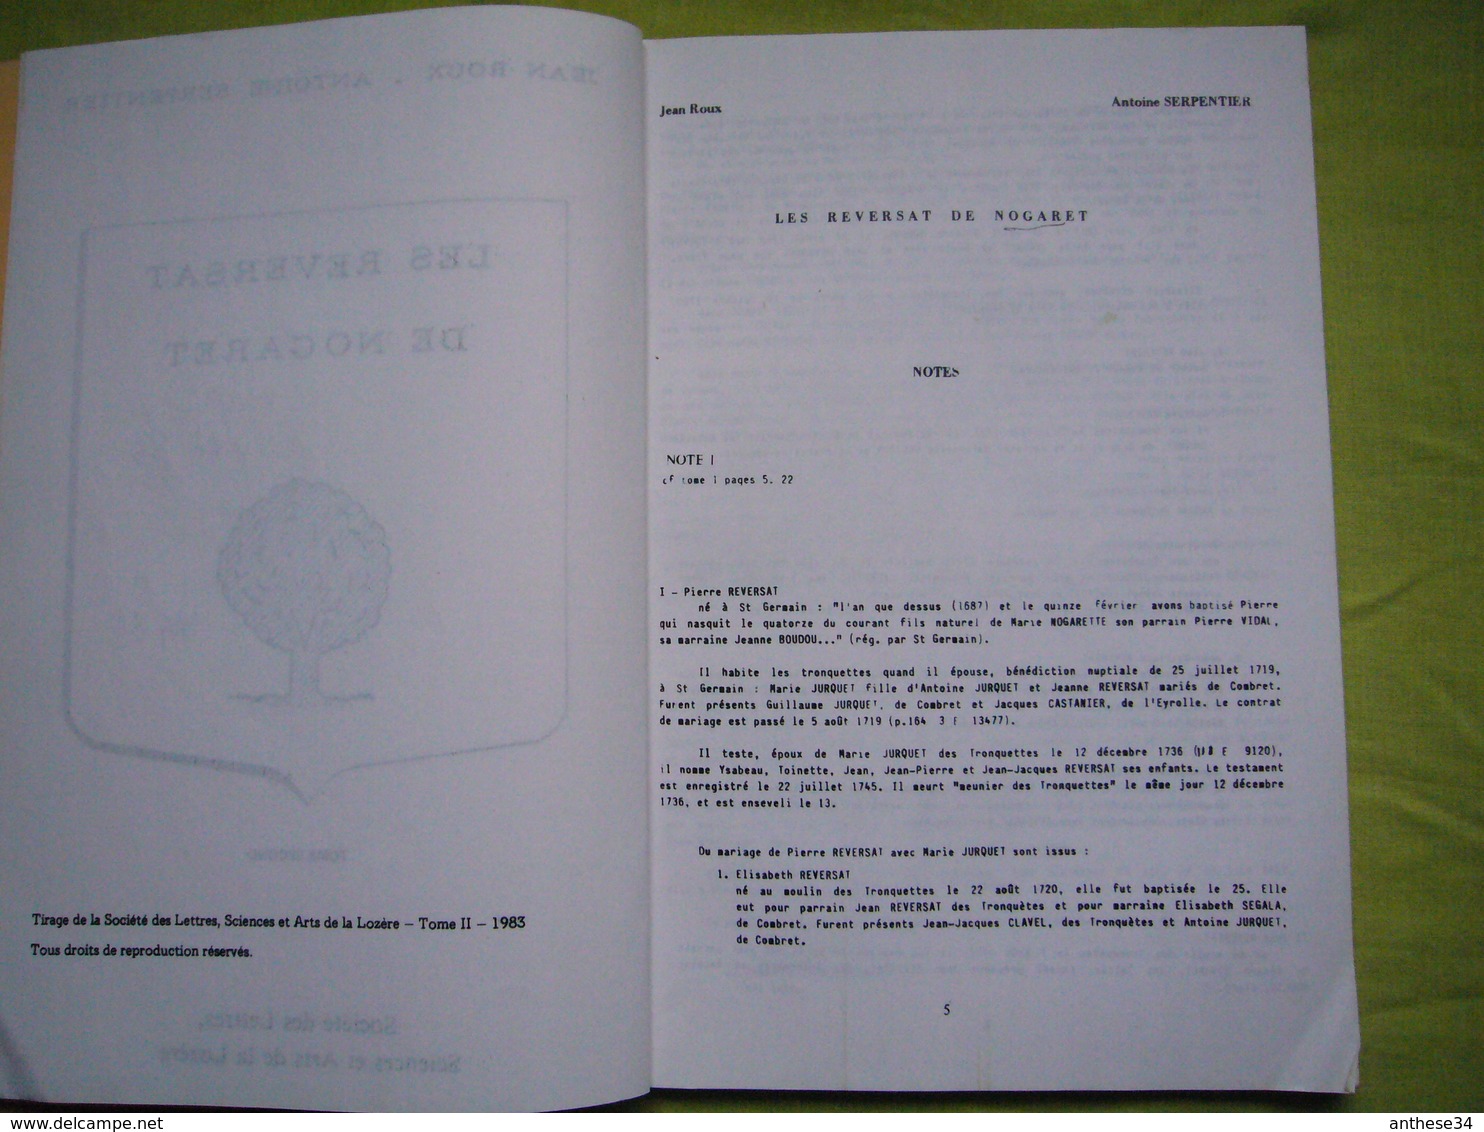 Tapuscrit en 2 volumes généalogie de la famille Reversat de Nogaret Lozère 250 pages